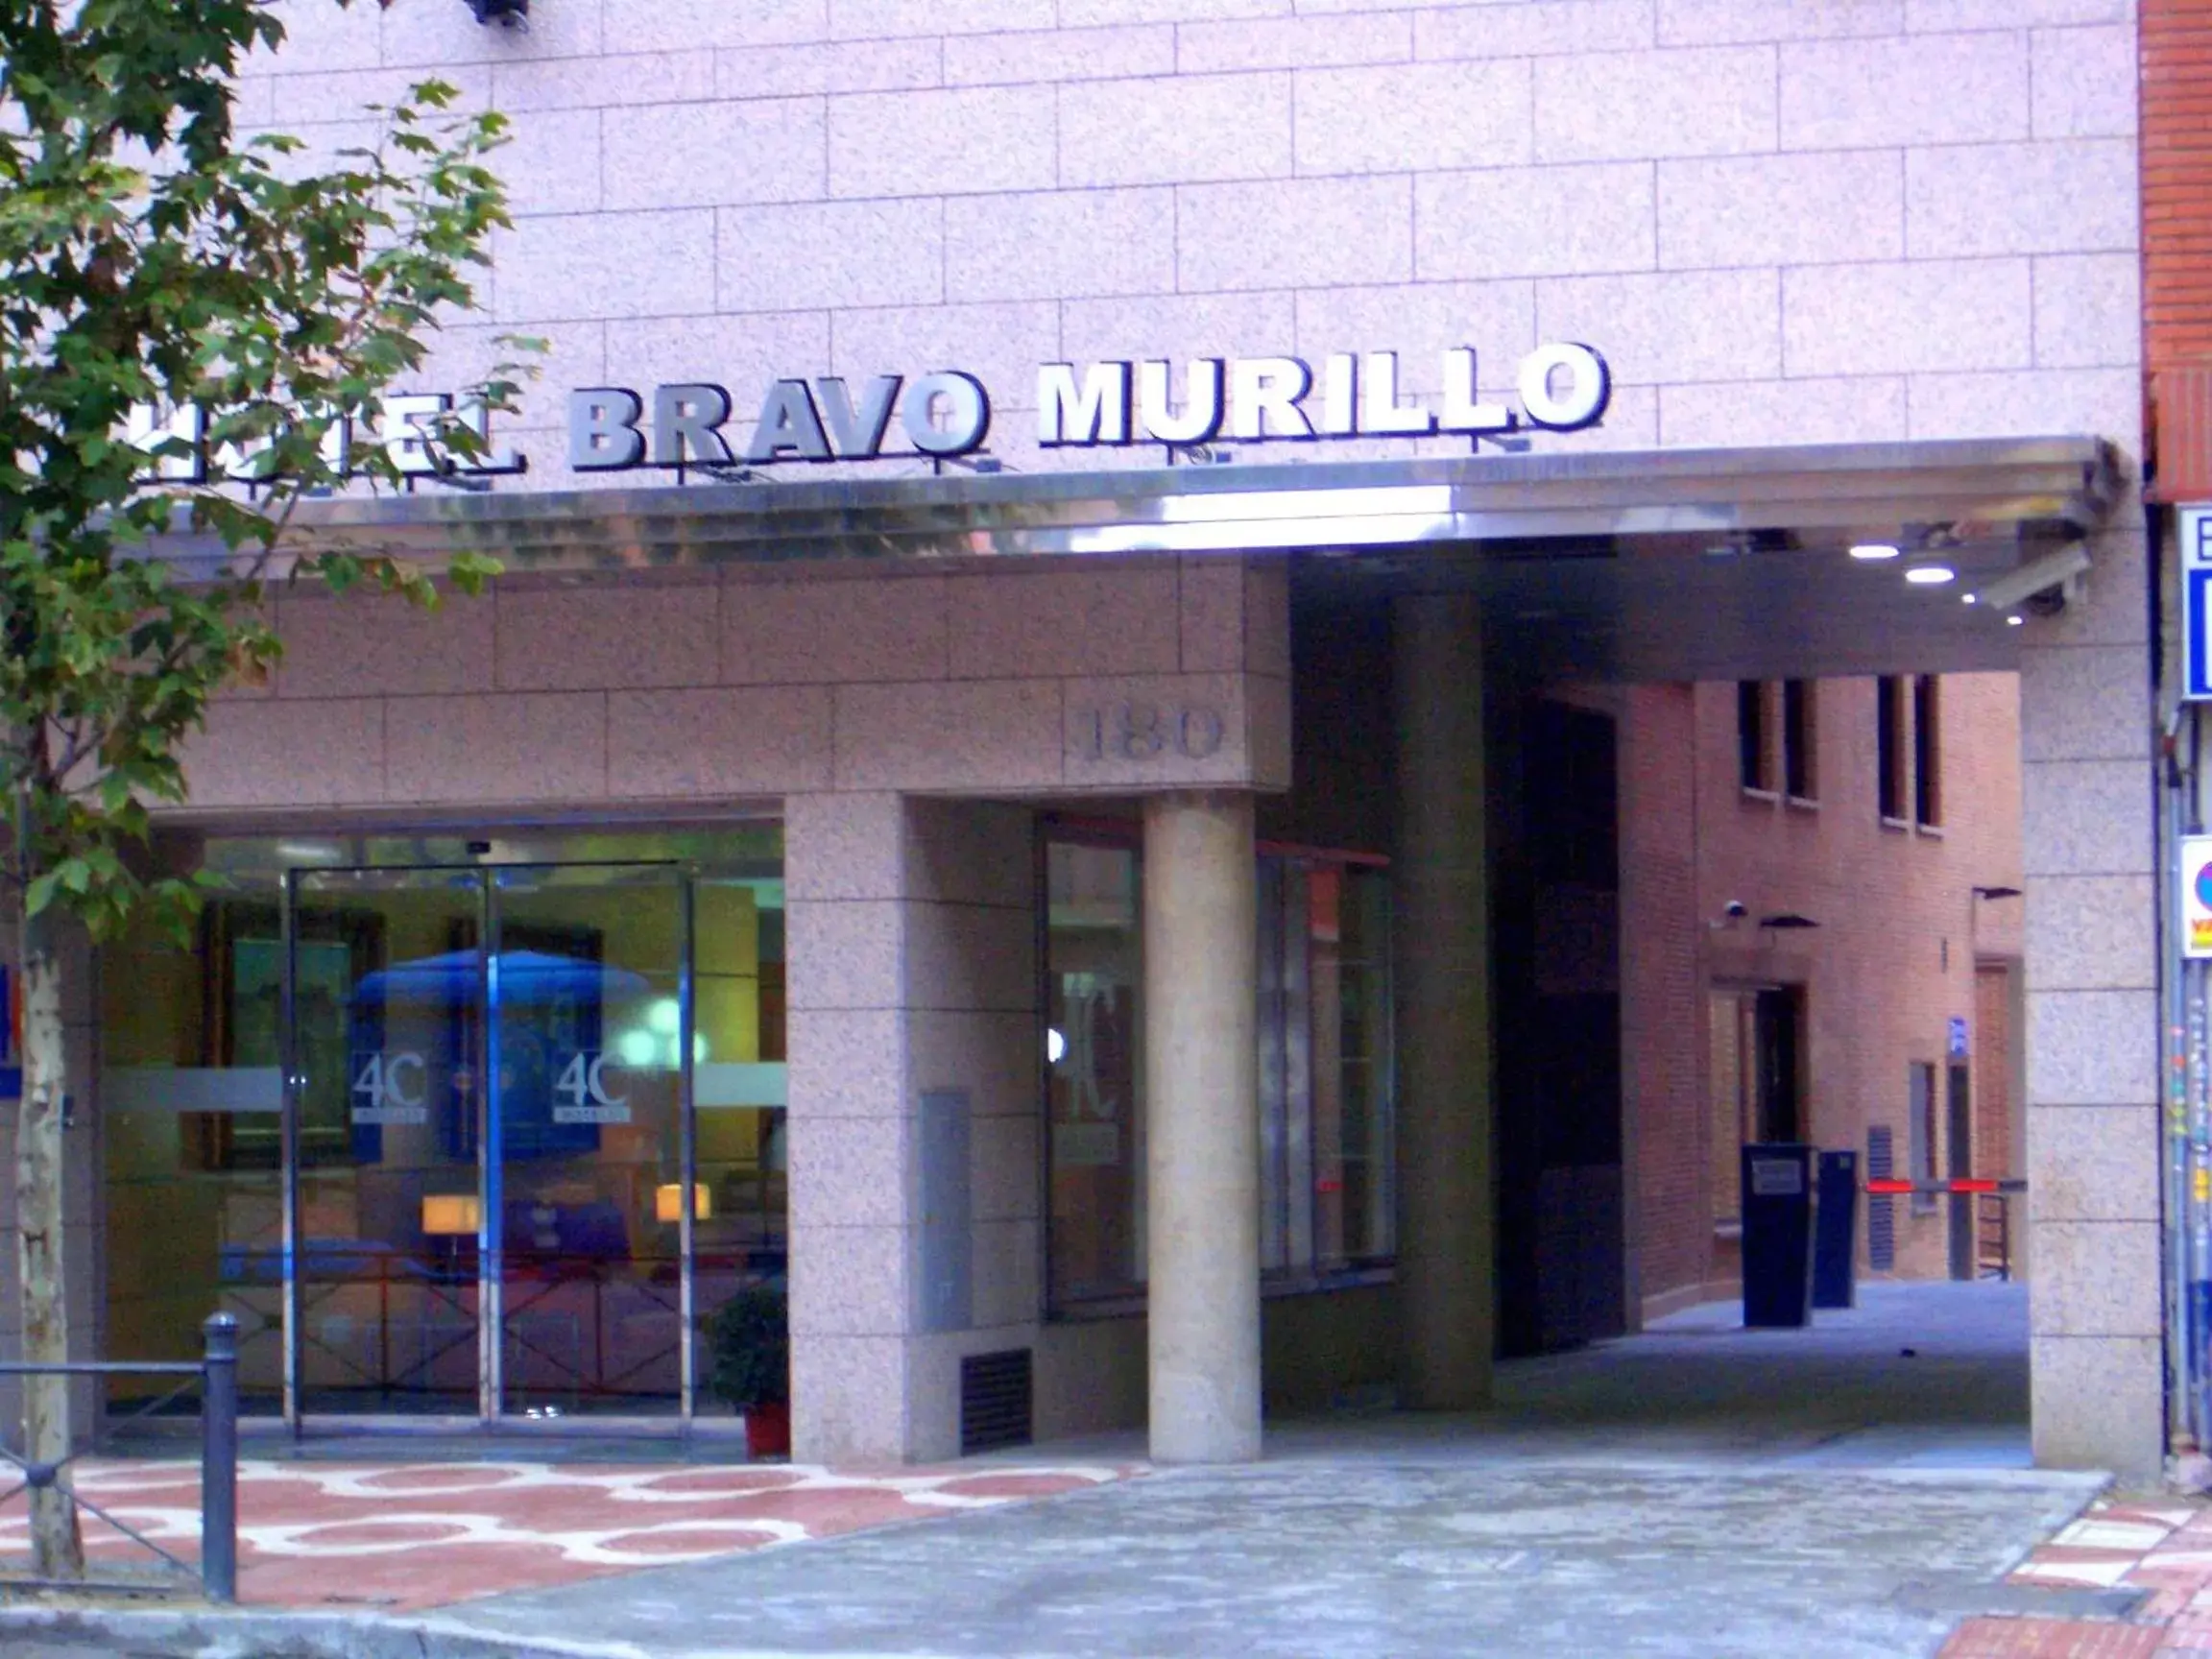 Facade/entrance in 4C Bravo Murillo